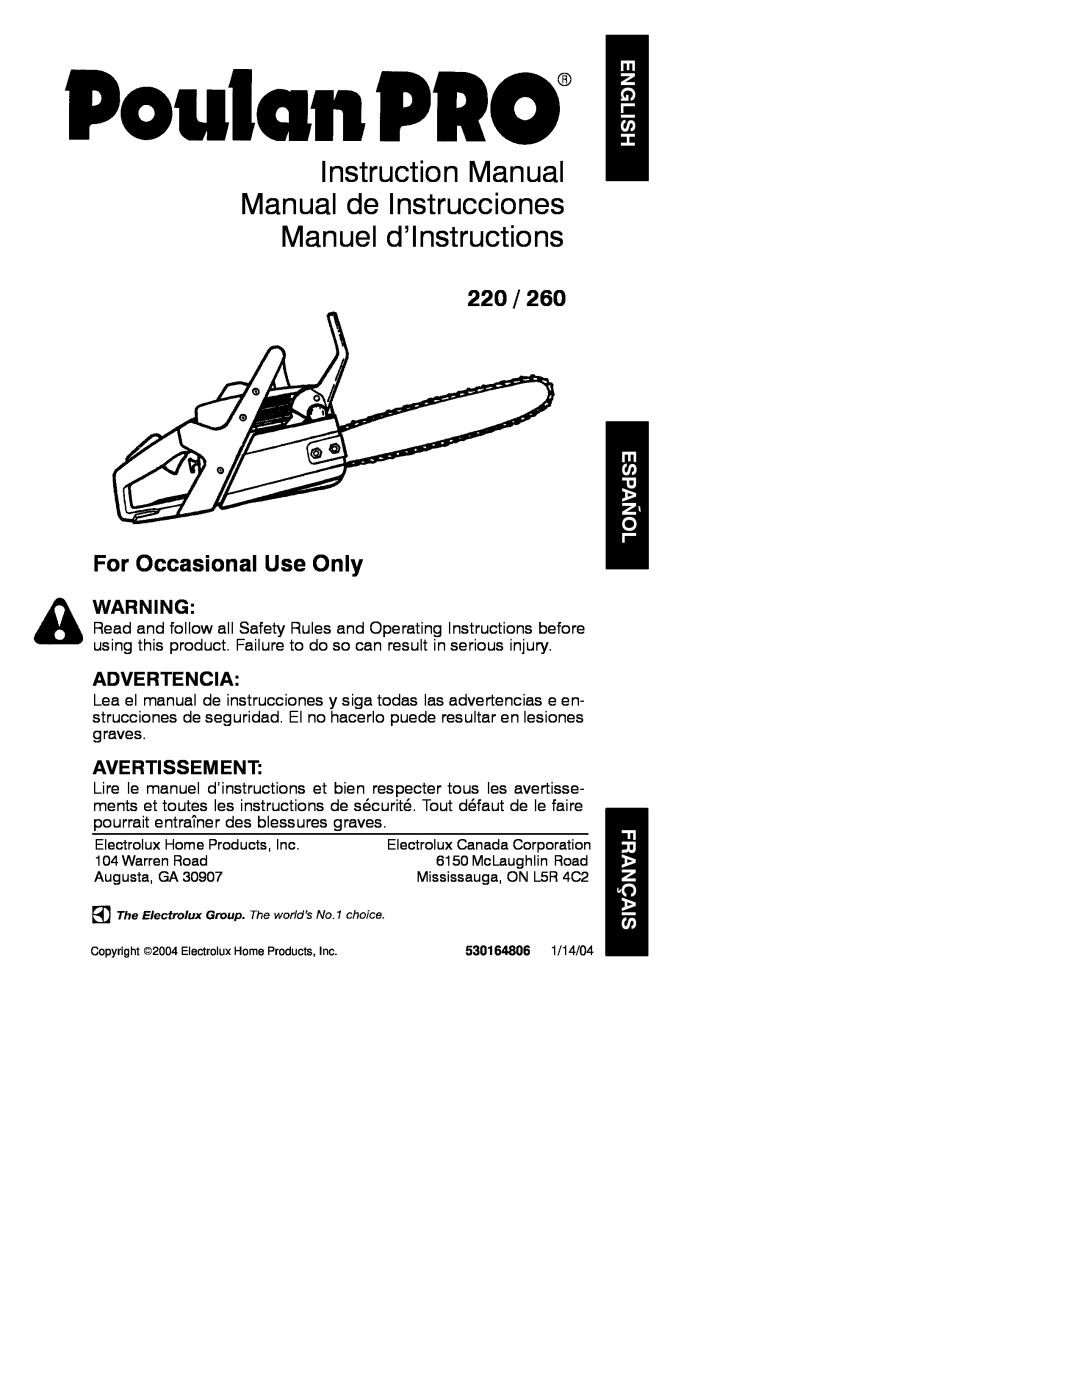 Poulan 2004-01, 530164806 instruction manual Instruction Manual Manual de Instrucciones Manuel d’Instructions, Advertencia 